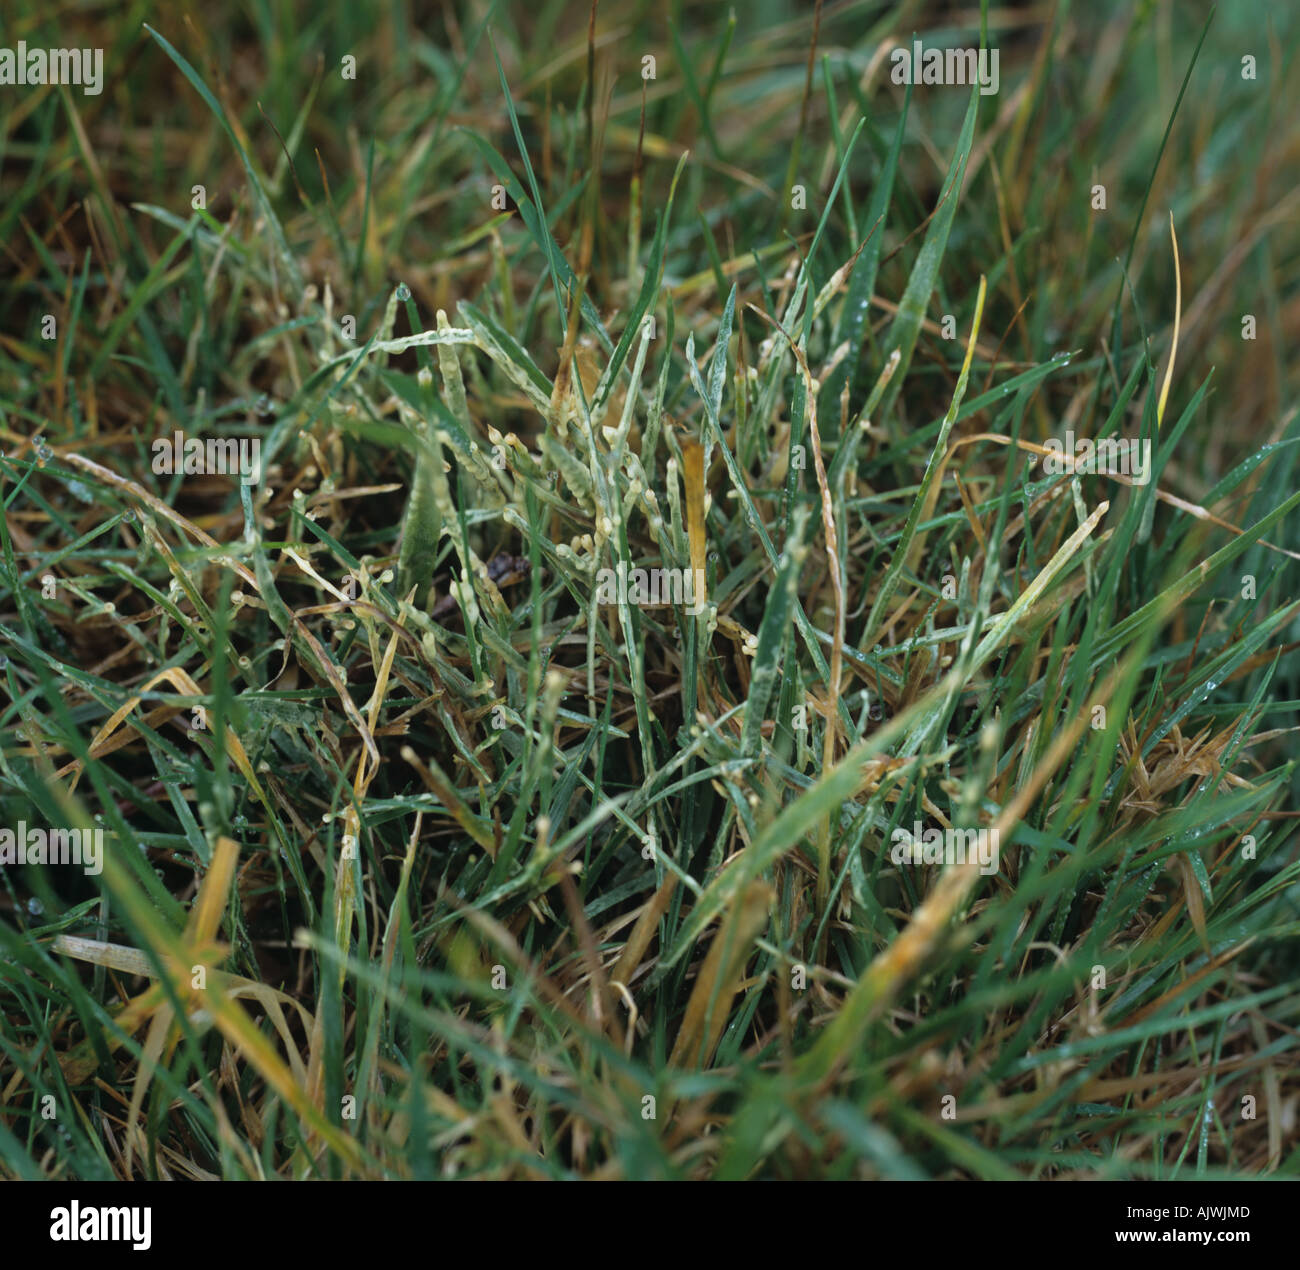 Appena formati dello stampo di fango su turfgrass su una mattina umido Foto Stock